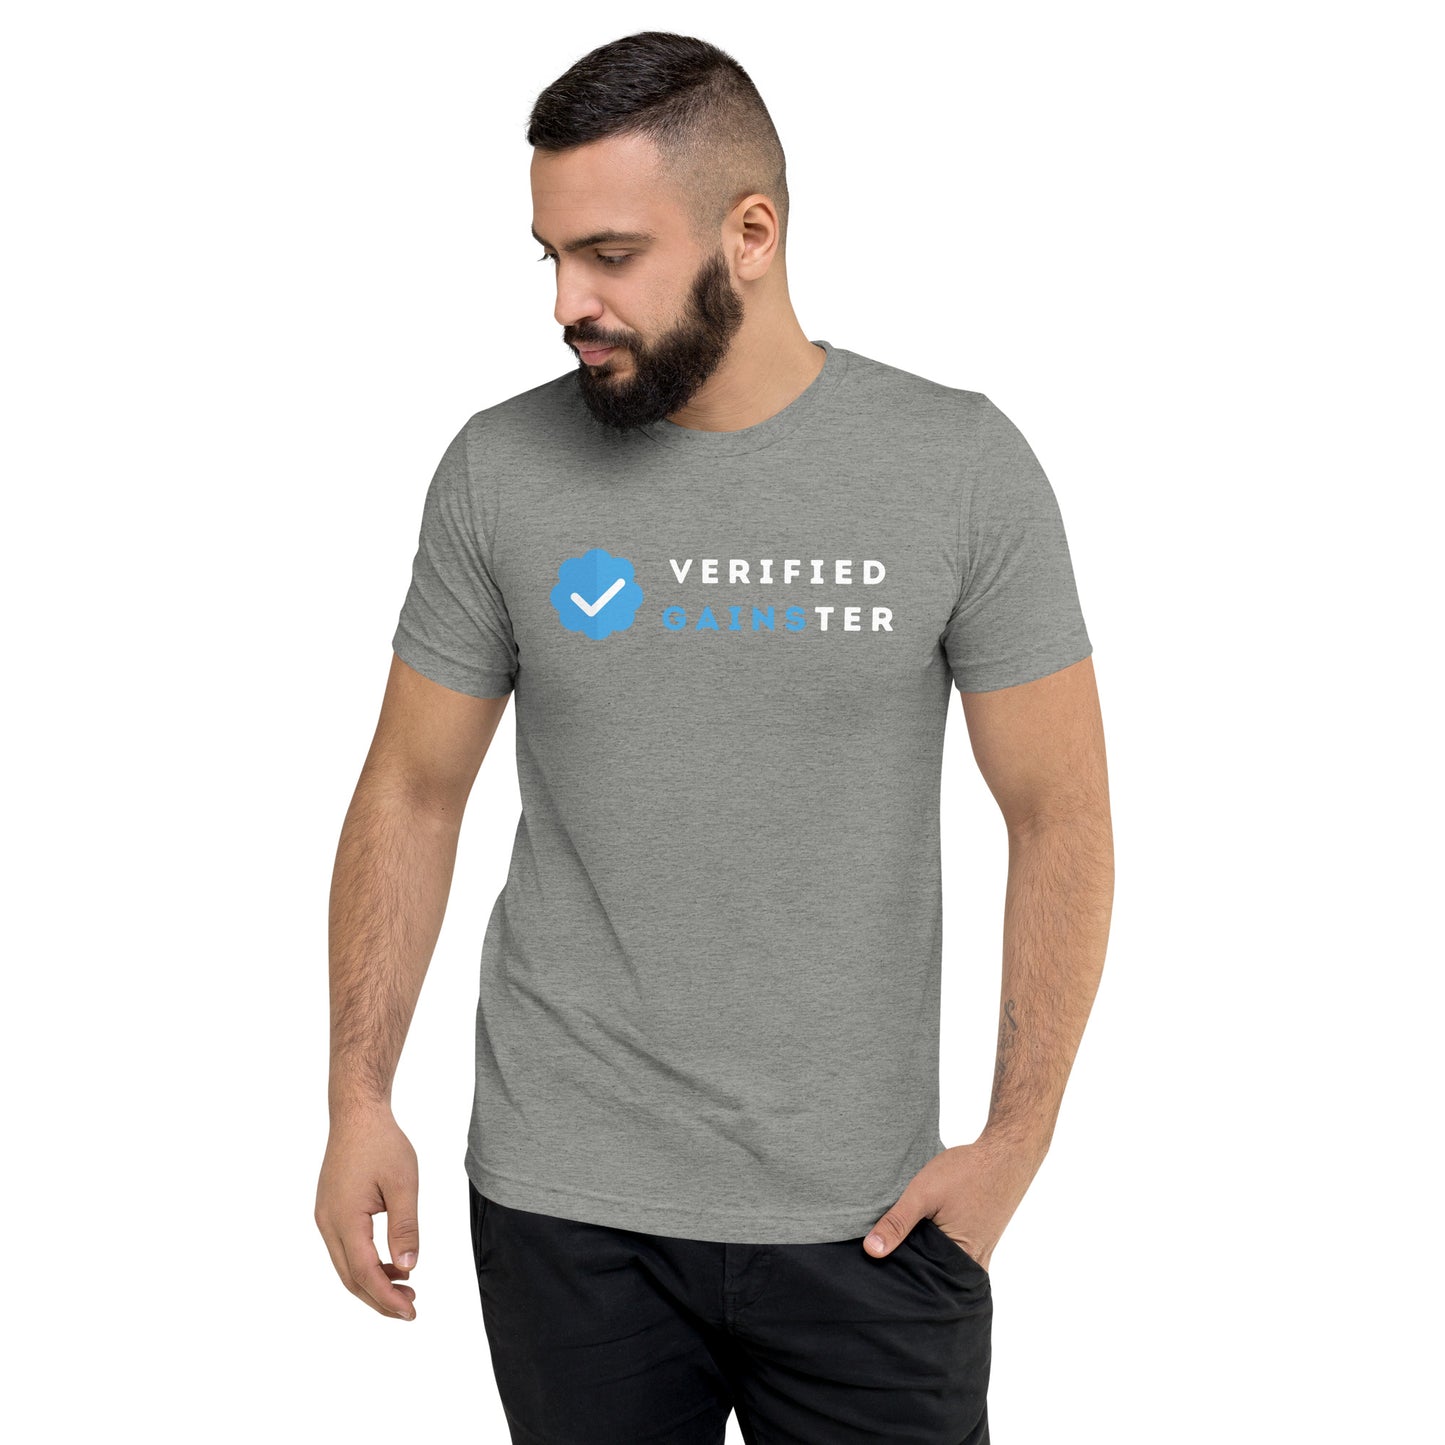 Verified Gainster Short sleeve T-Shirt